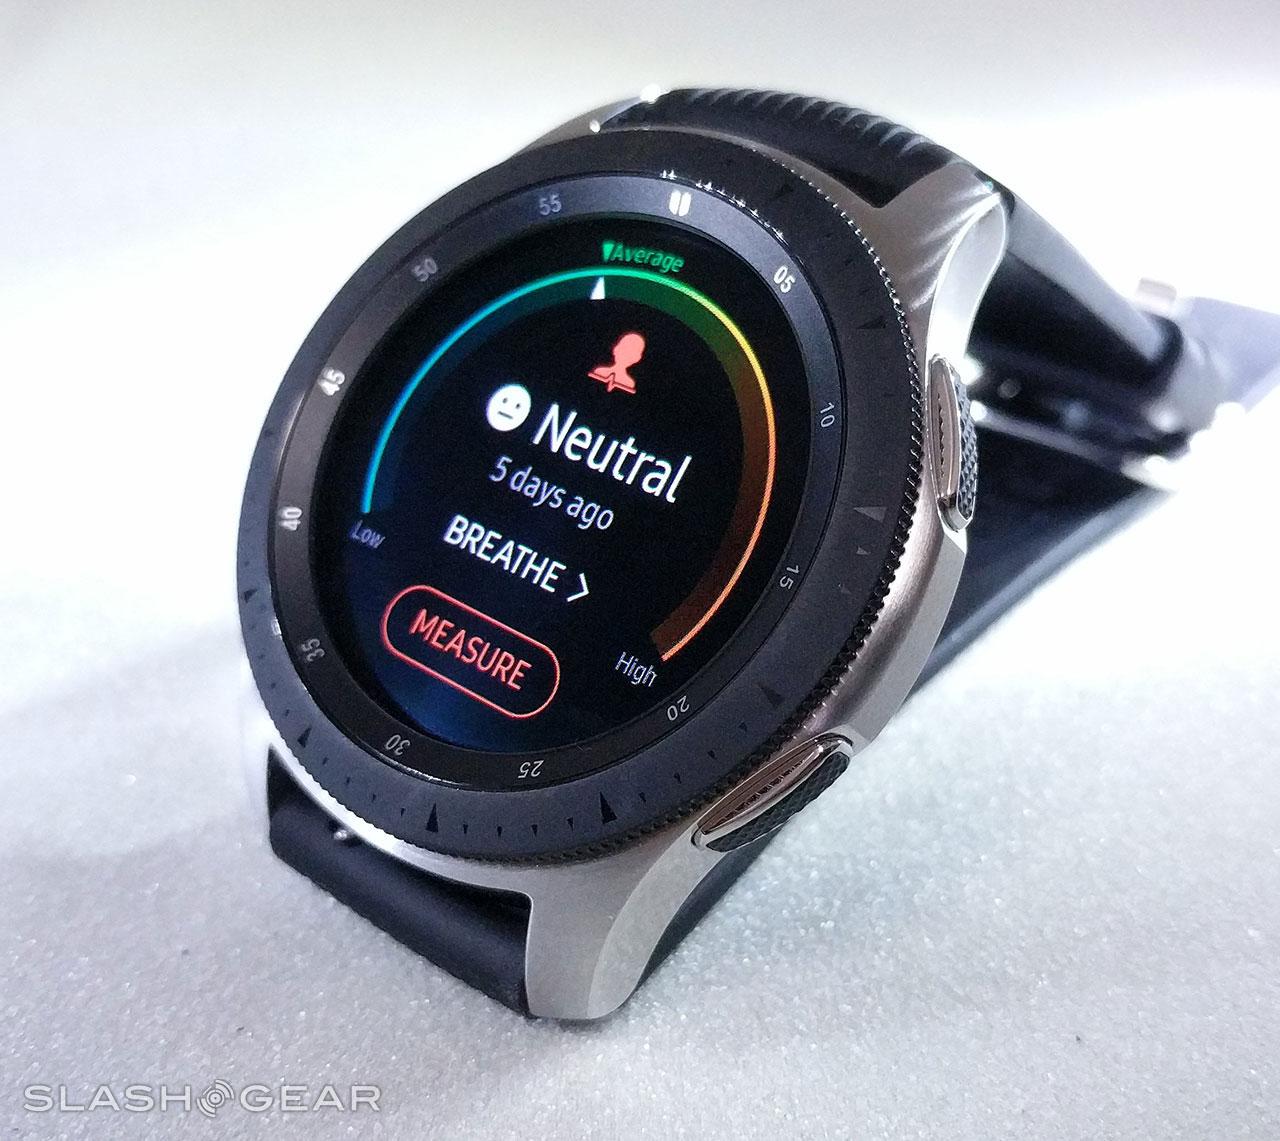 Samsung watch sm r800. Samsung Galaxy watch SMARTWATCH 46mm. Samsung Galaxy watch r800. Galaxy watch SM-r800.